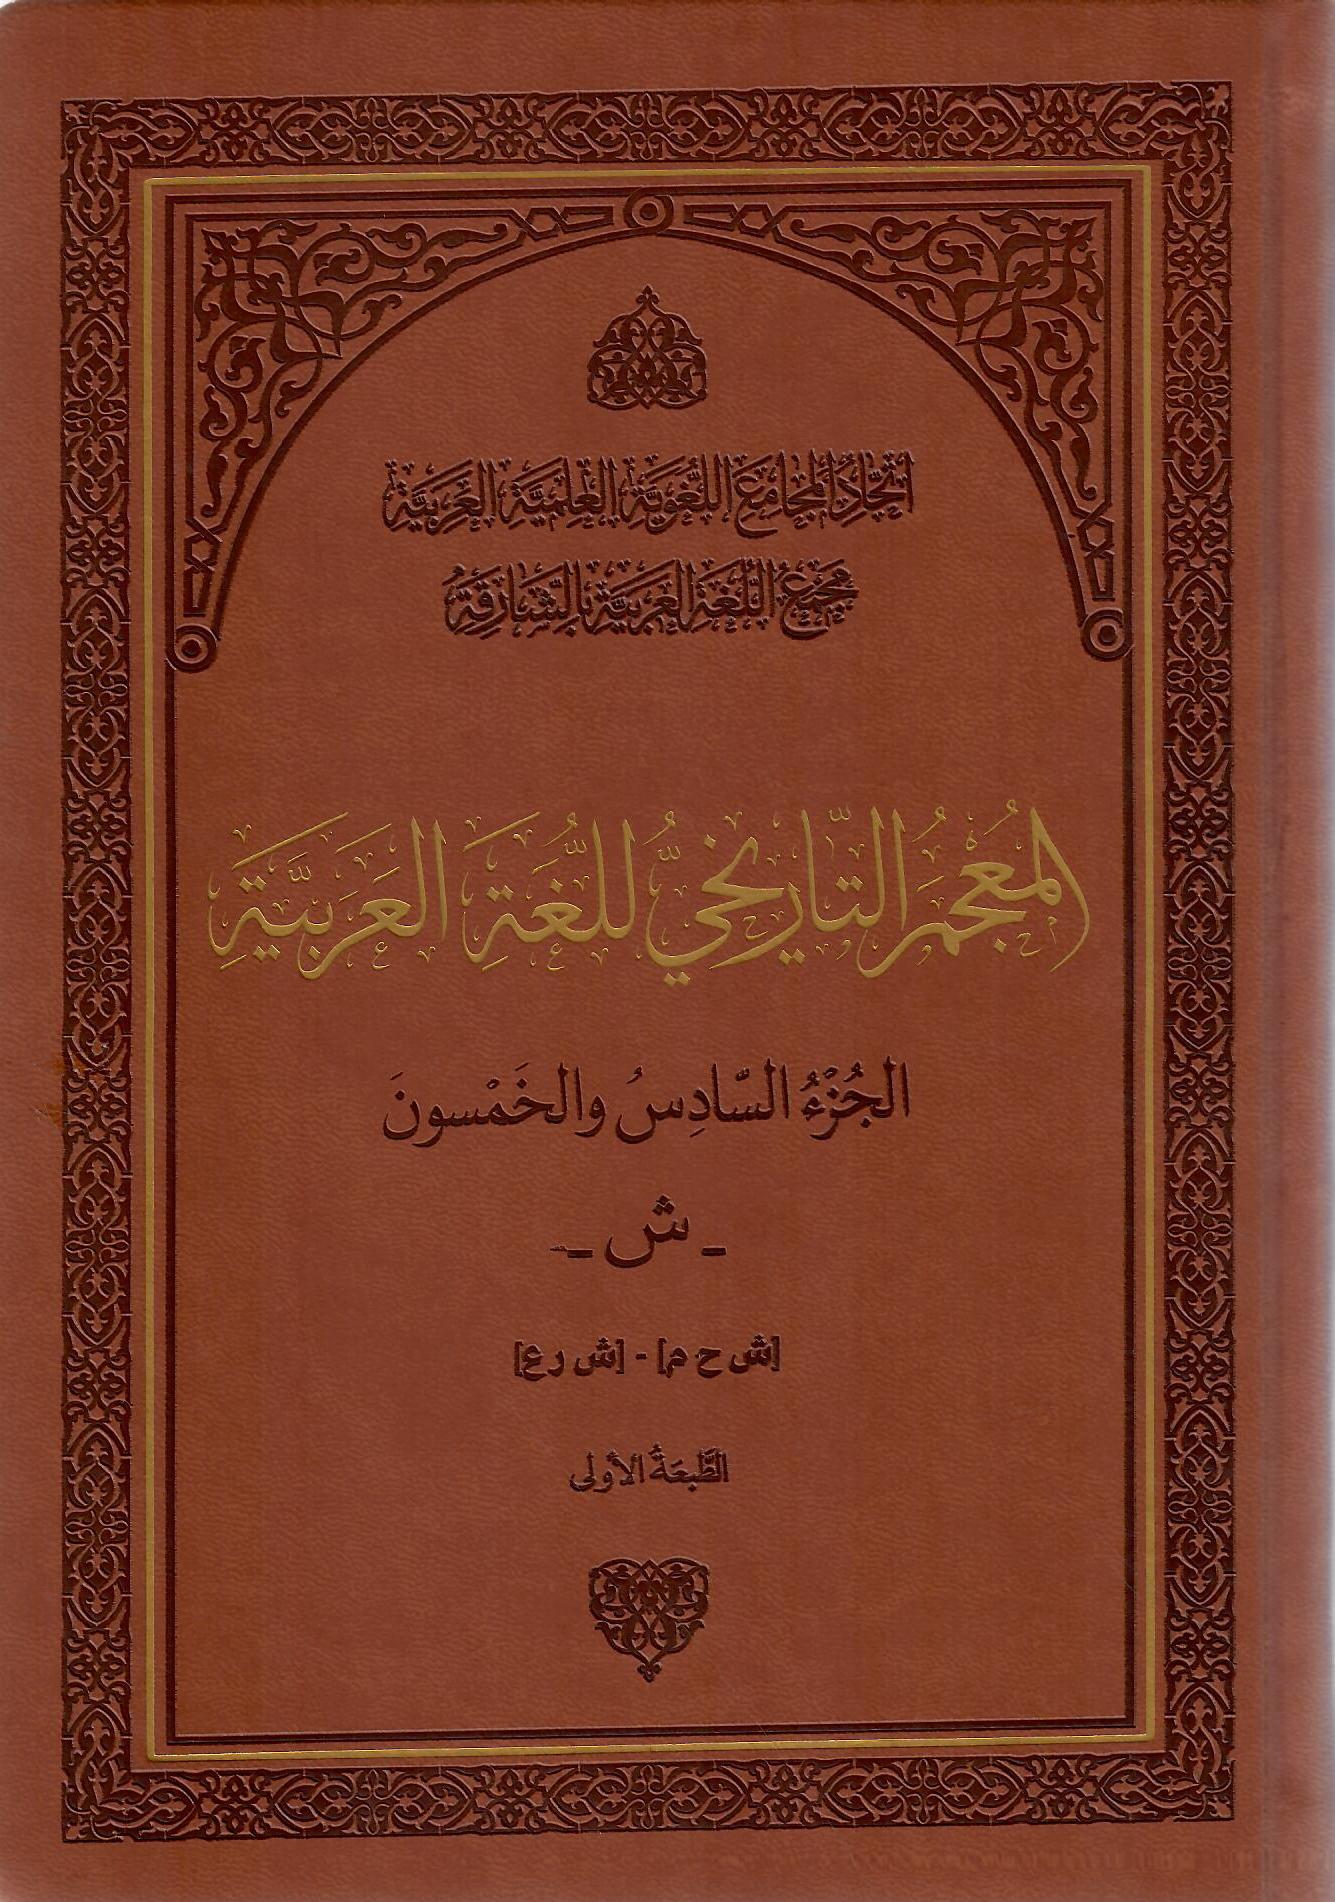 المعجم التاريخي للغة العربية الجزء السادس والخمسون